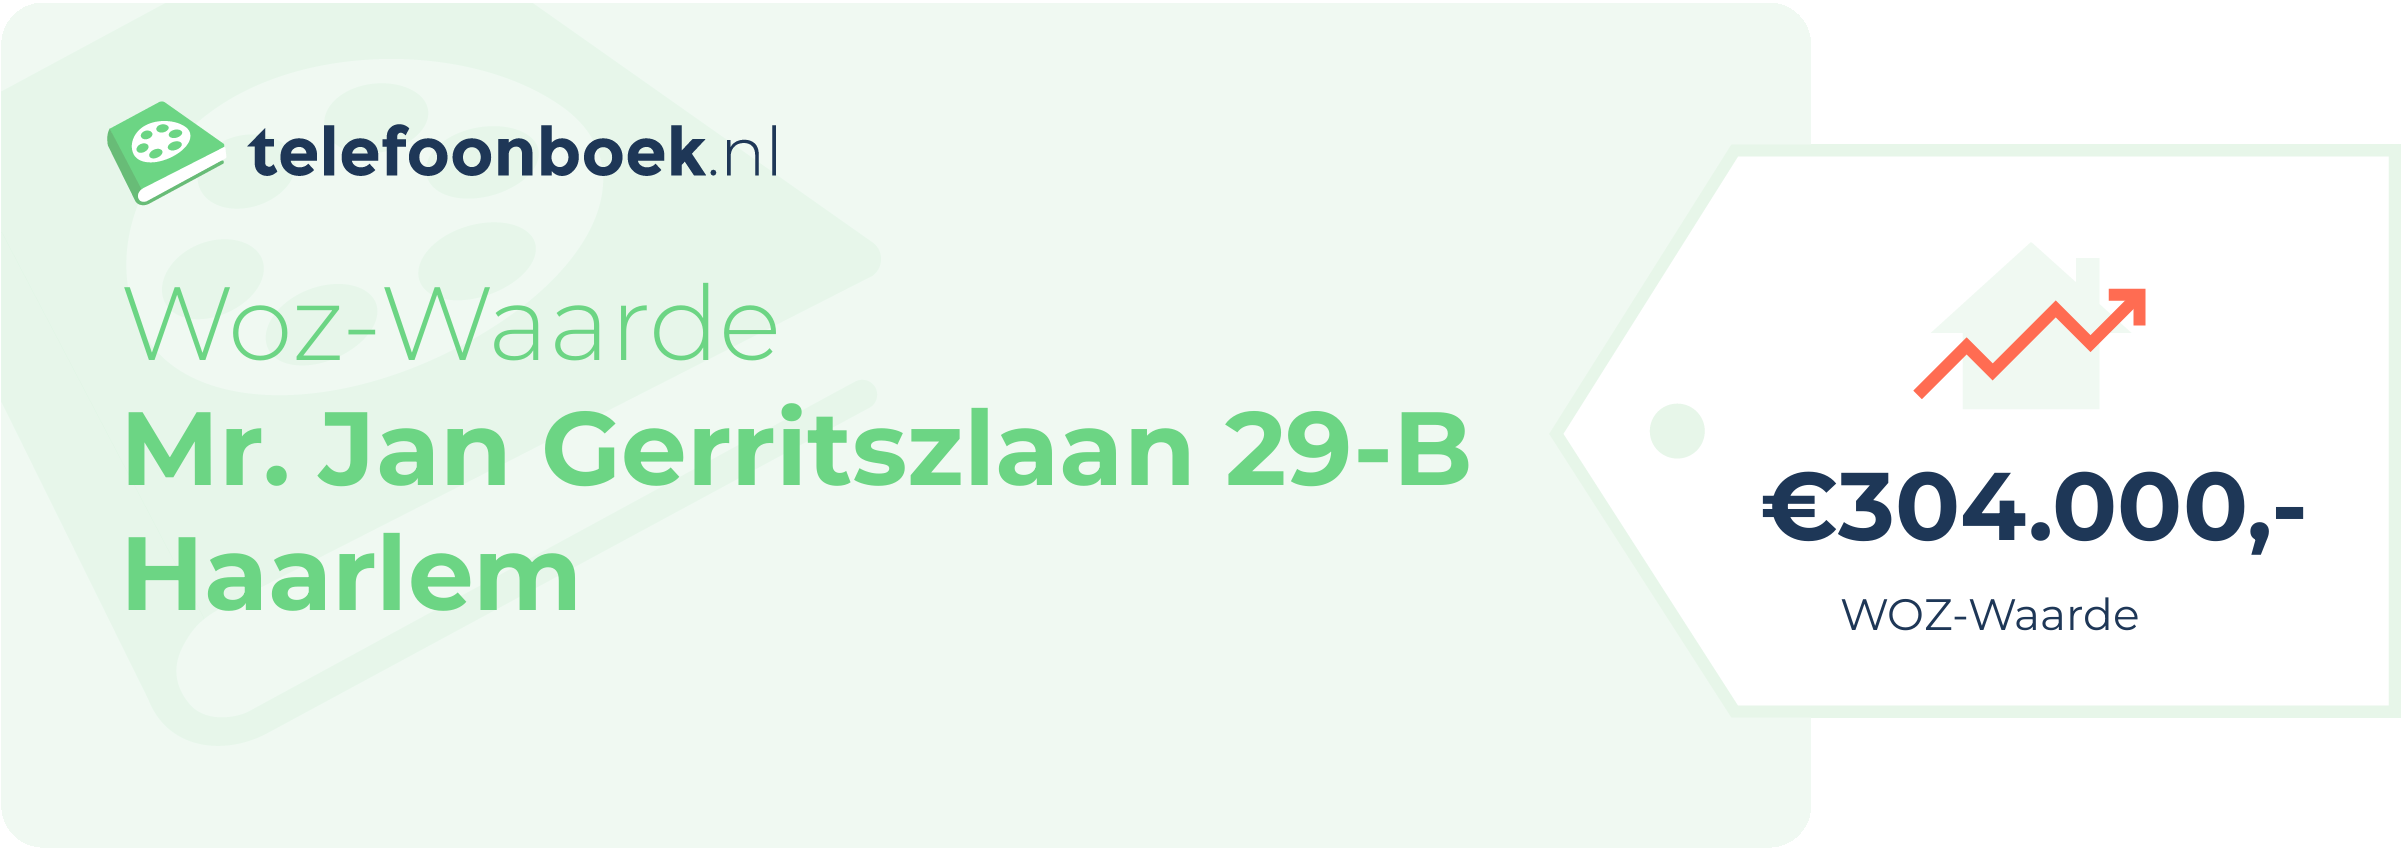 WOZ-waarde Mr. Jan Gerritszlaan 29-B Haarlem